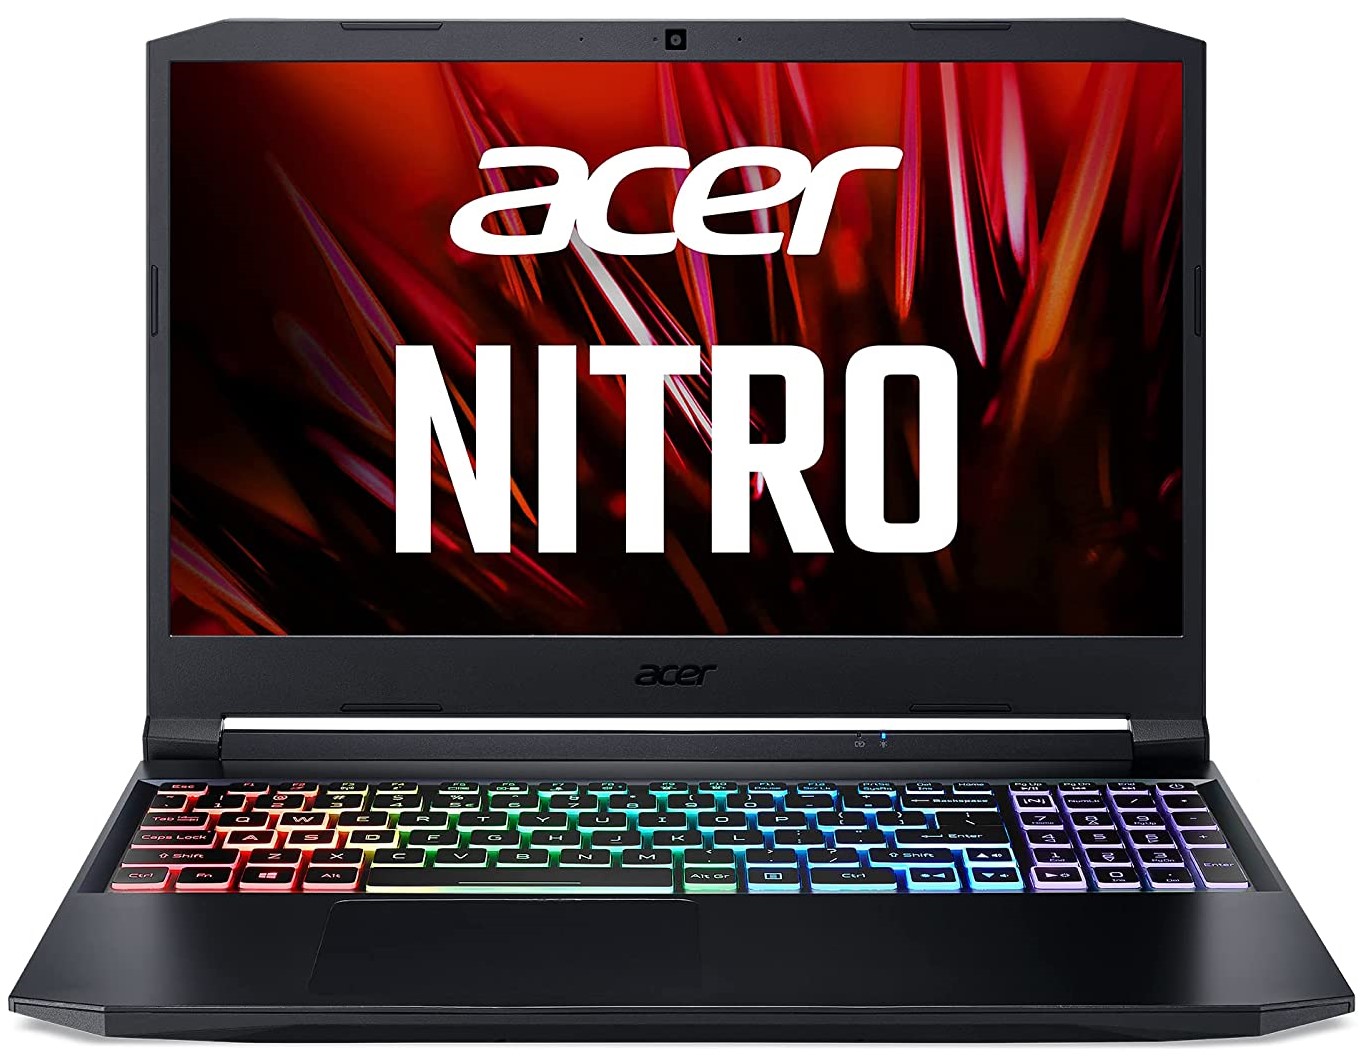 Acer Nitro 5 11th Gen Intel Core i5-11400H